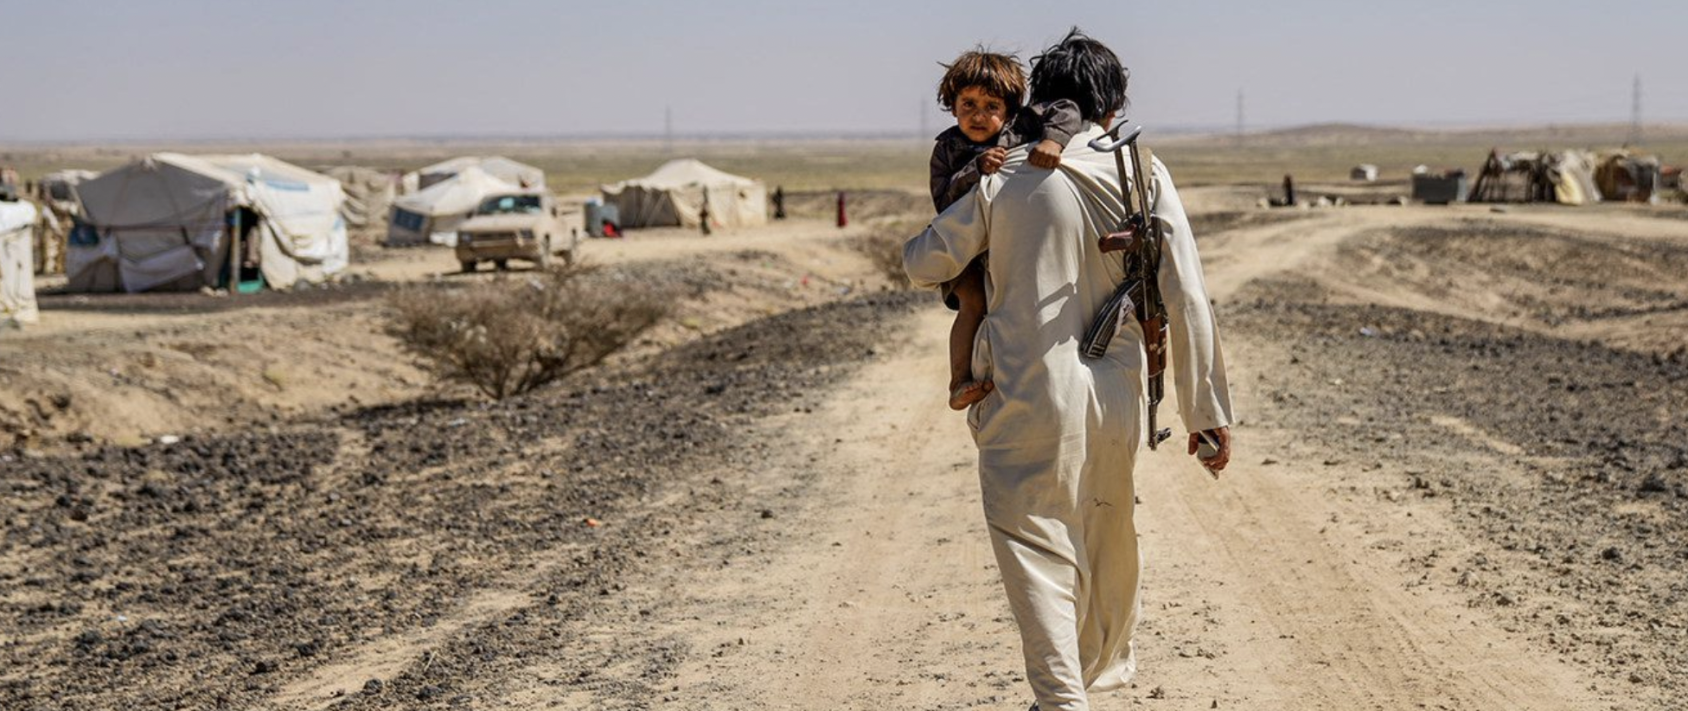 Un homme tient son enfant dans les bras et marche sur un chemin de terre, un fusil à l'épaule, vers un camp de réfugiés situé au milieu d'une étendue désertique.